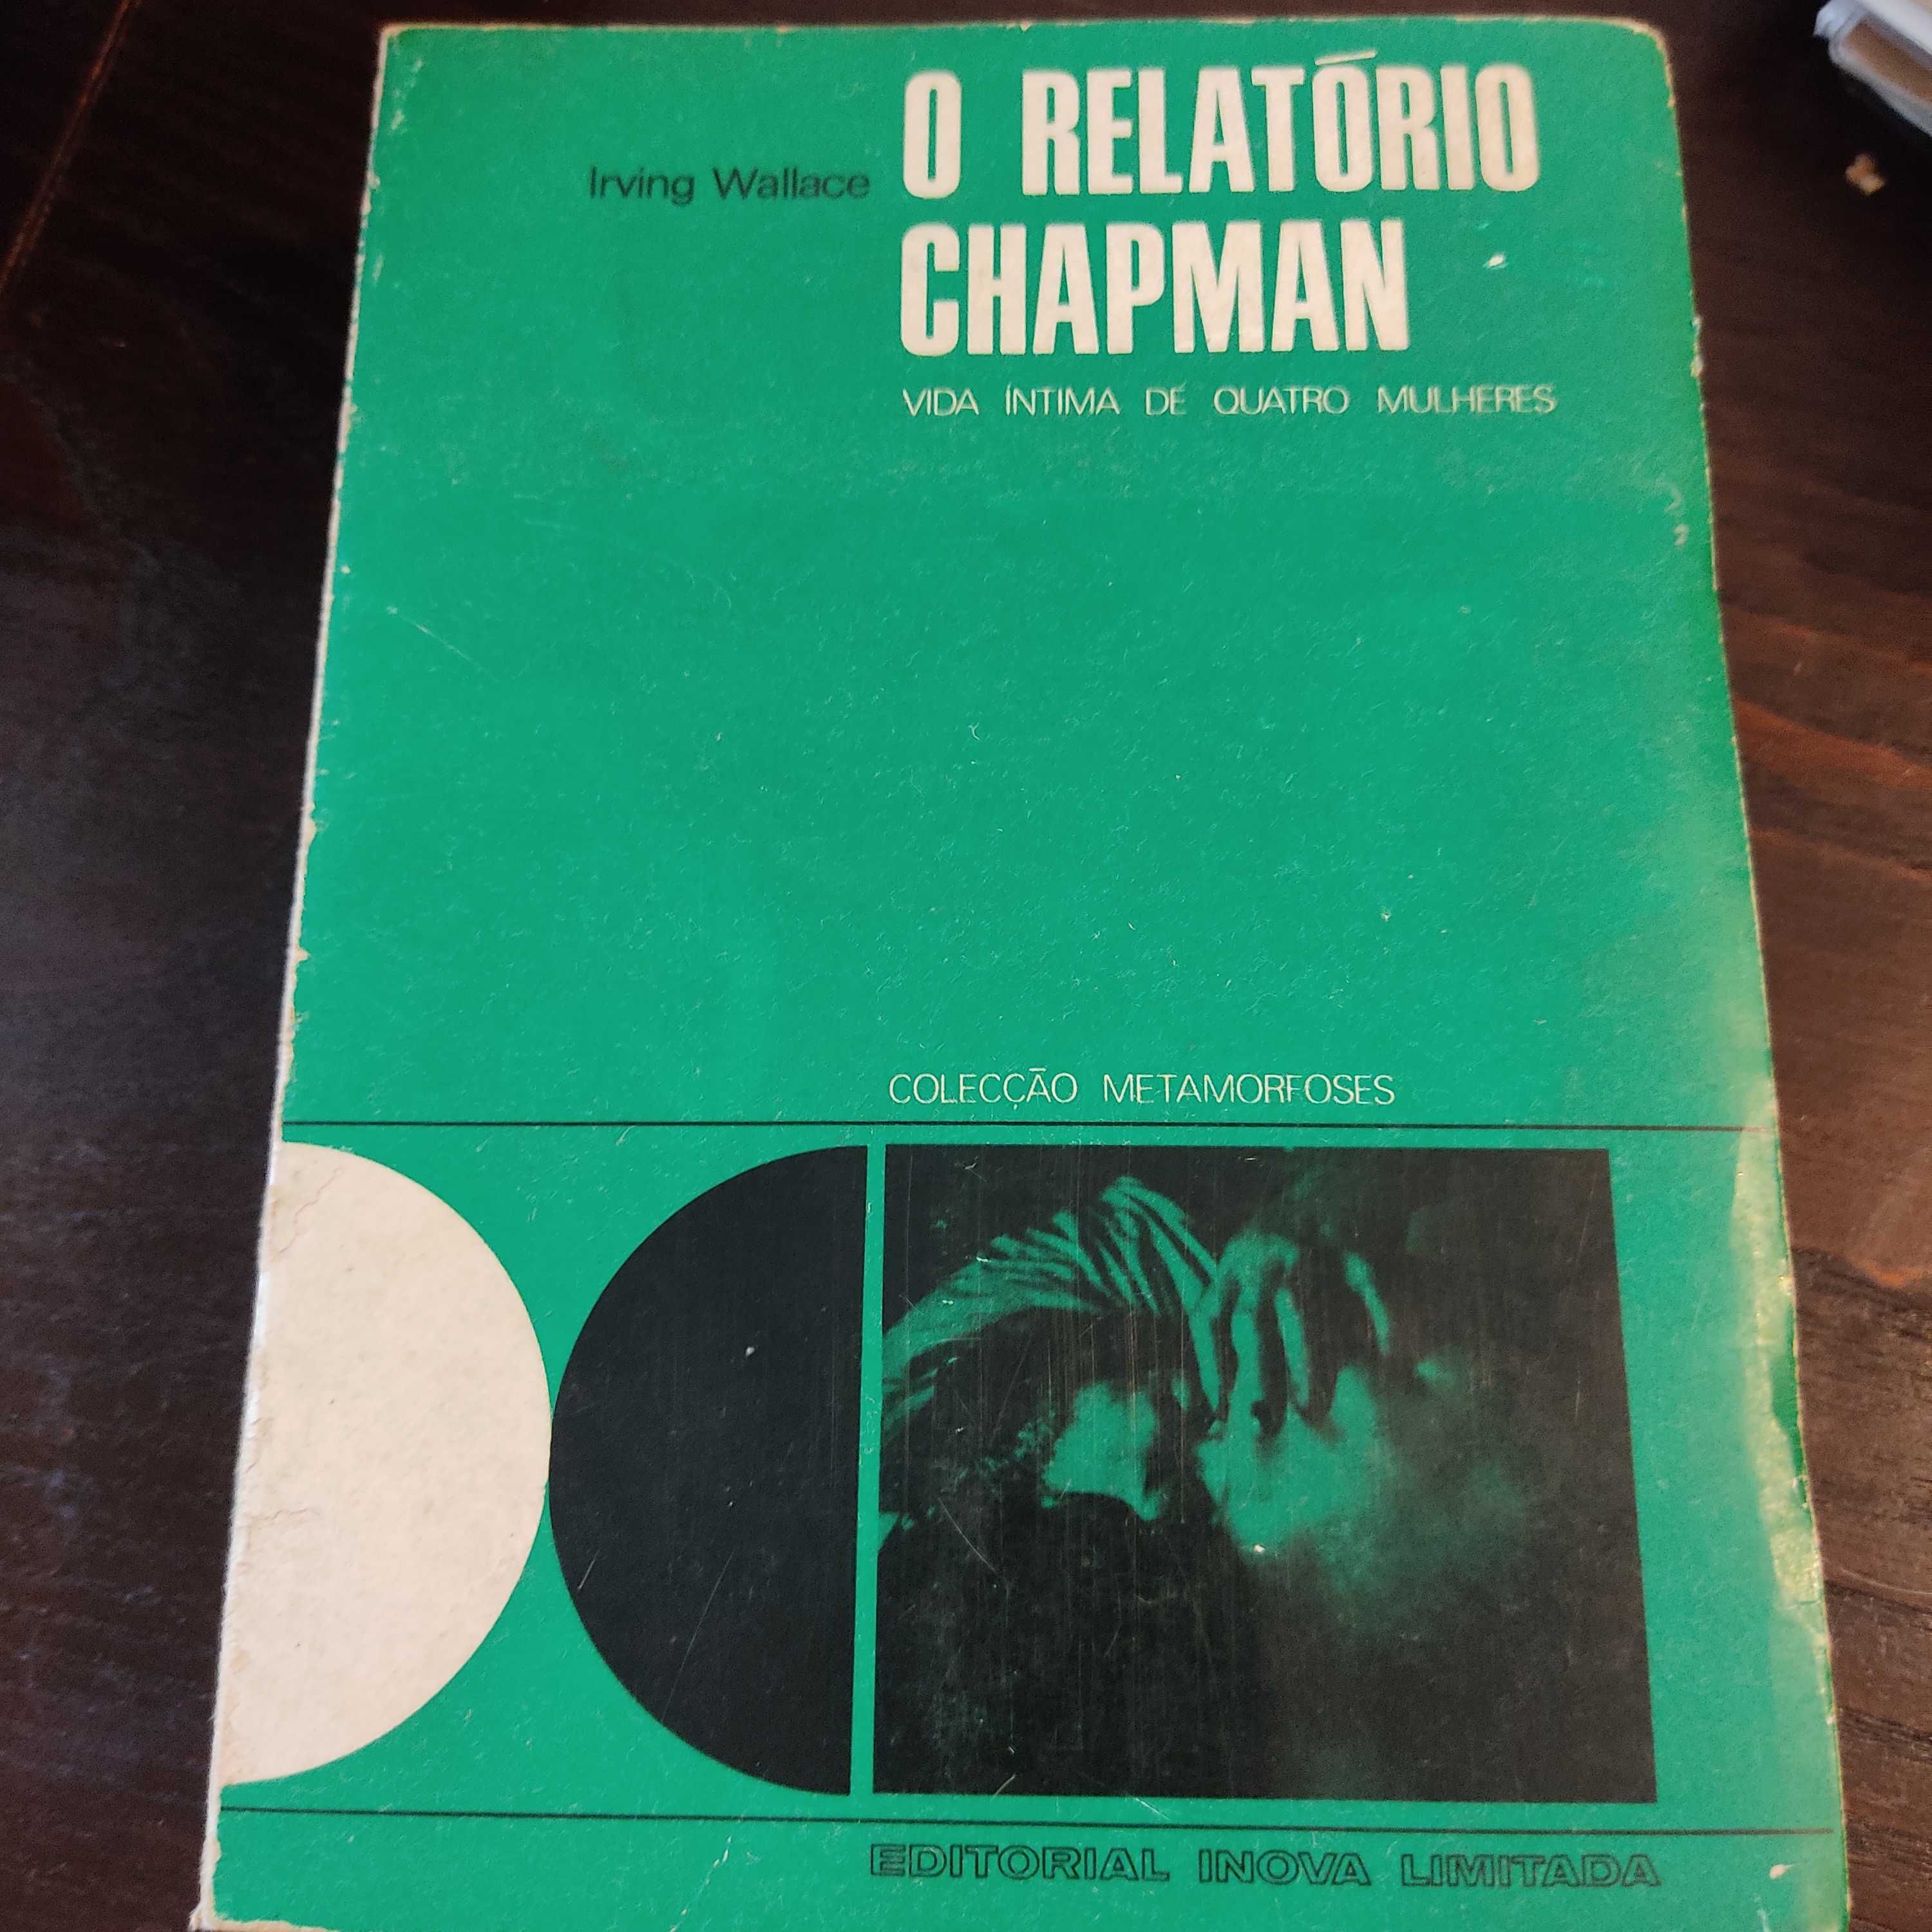 Livro "O Relatório Chapman" de Irving Wallace